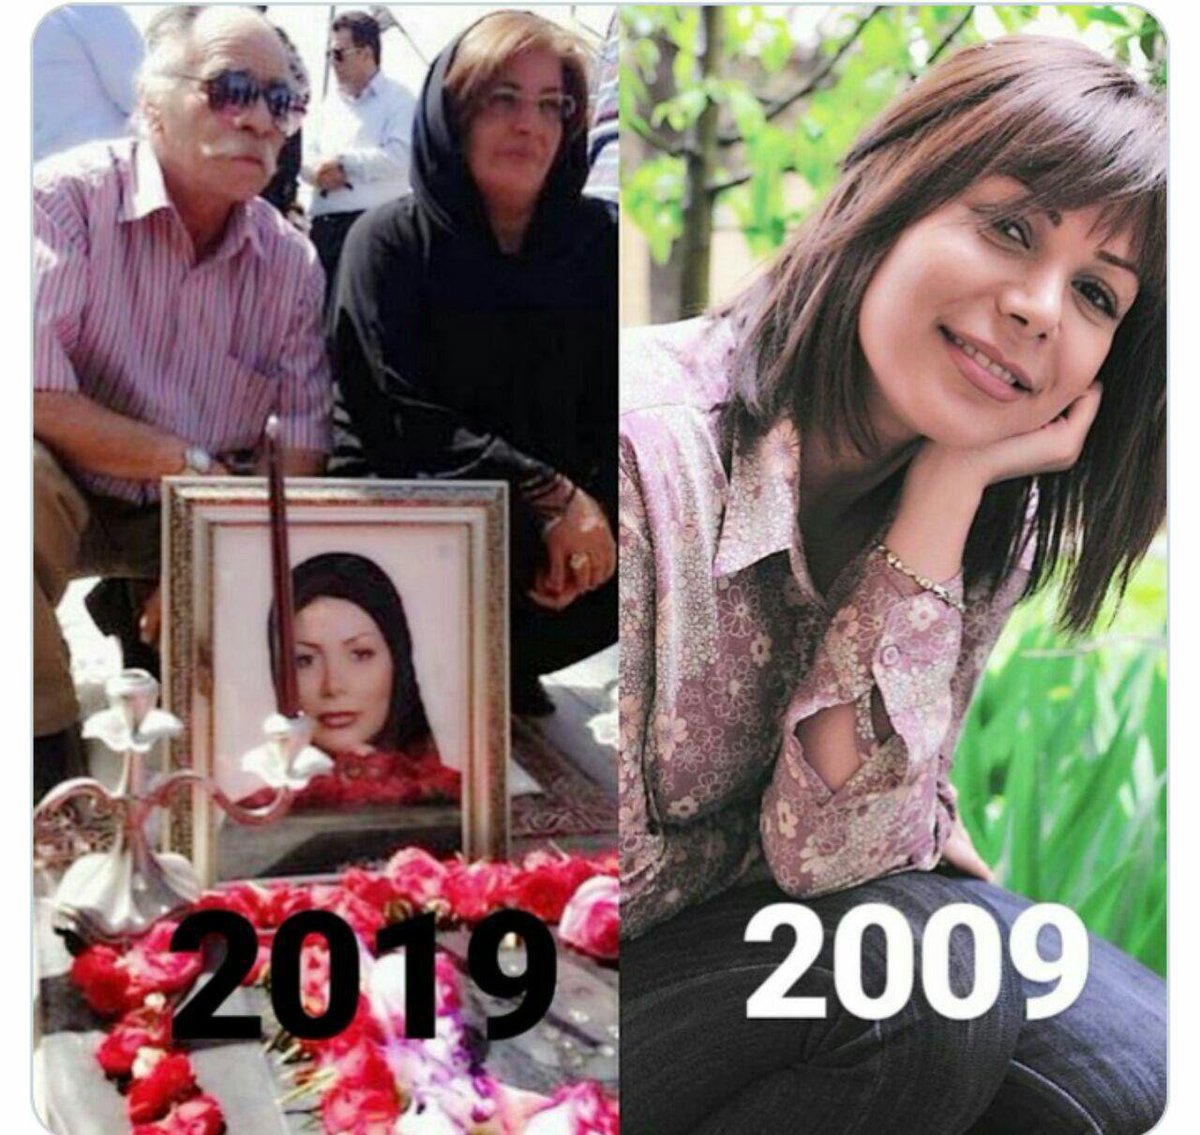 ندای ایران ۳۶ ساله شد🌹

سوم بهمن ماه زاد روز 'ندا'🌷
ندای آزادیخواهی مردم ایران

میلادت مبارک دختر ایران🌷